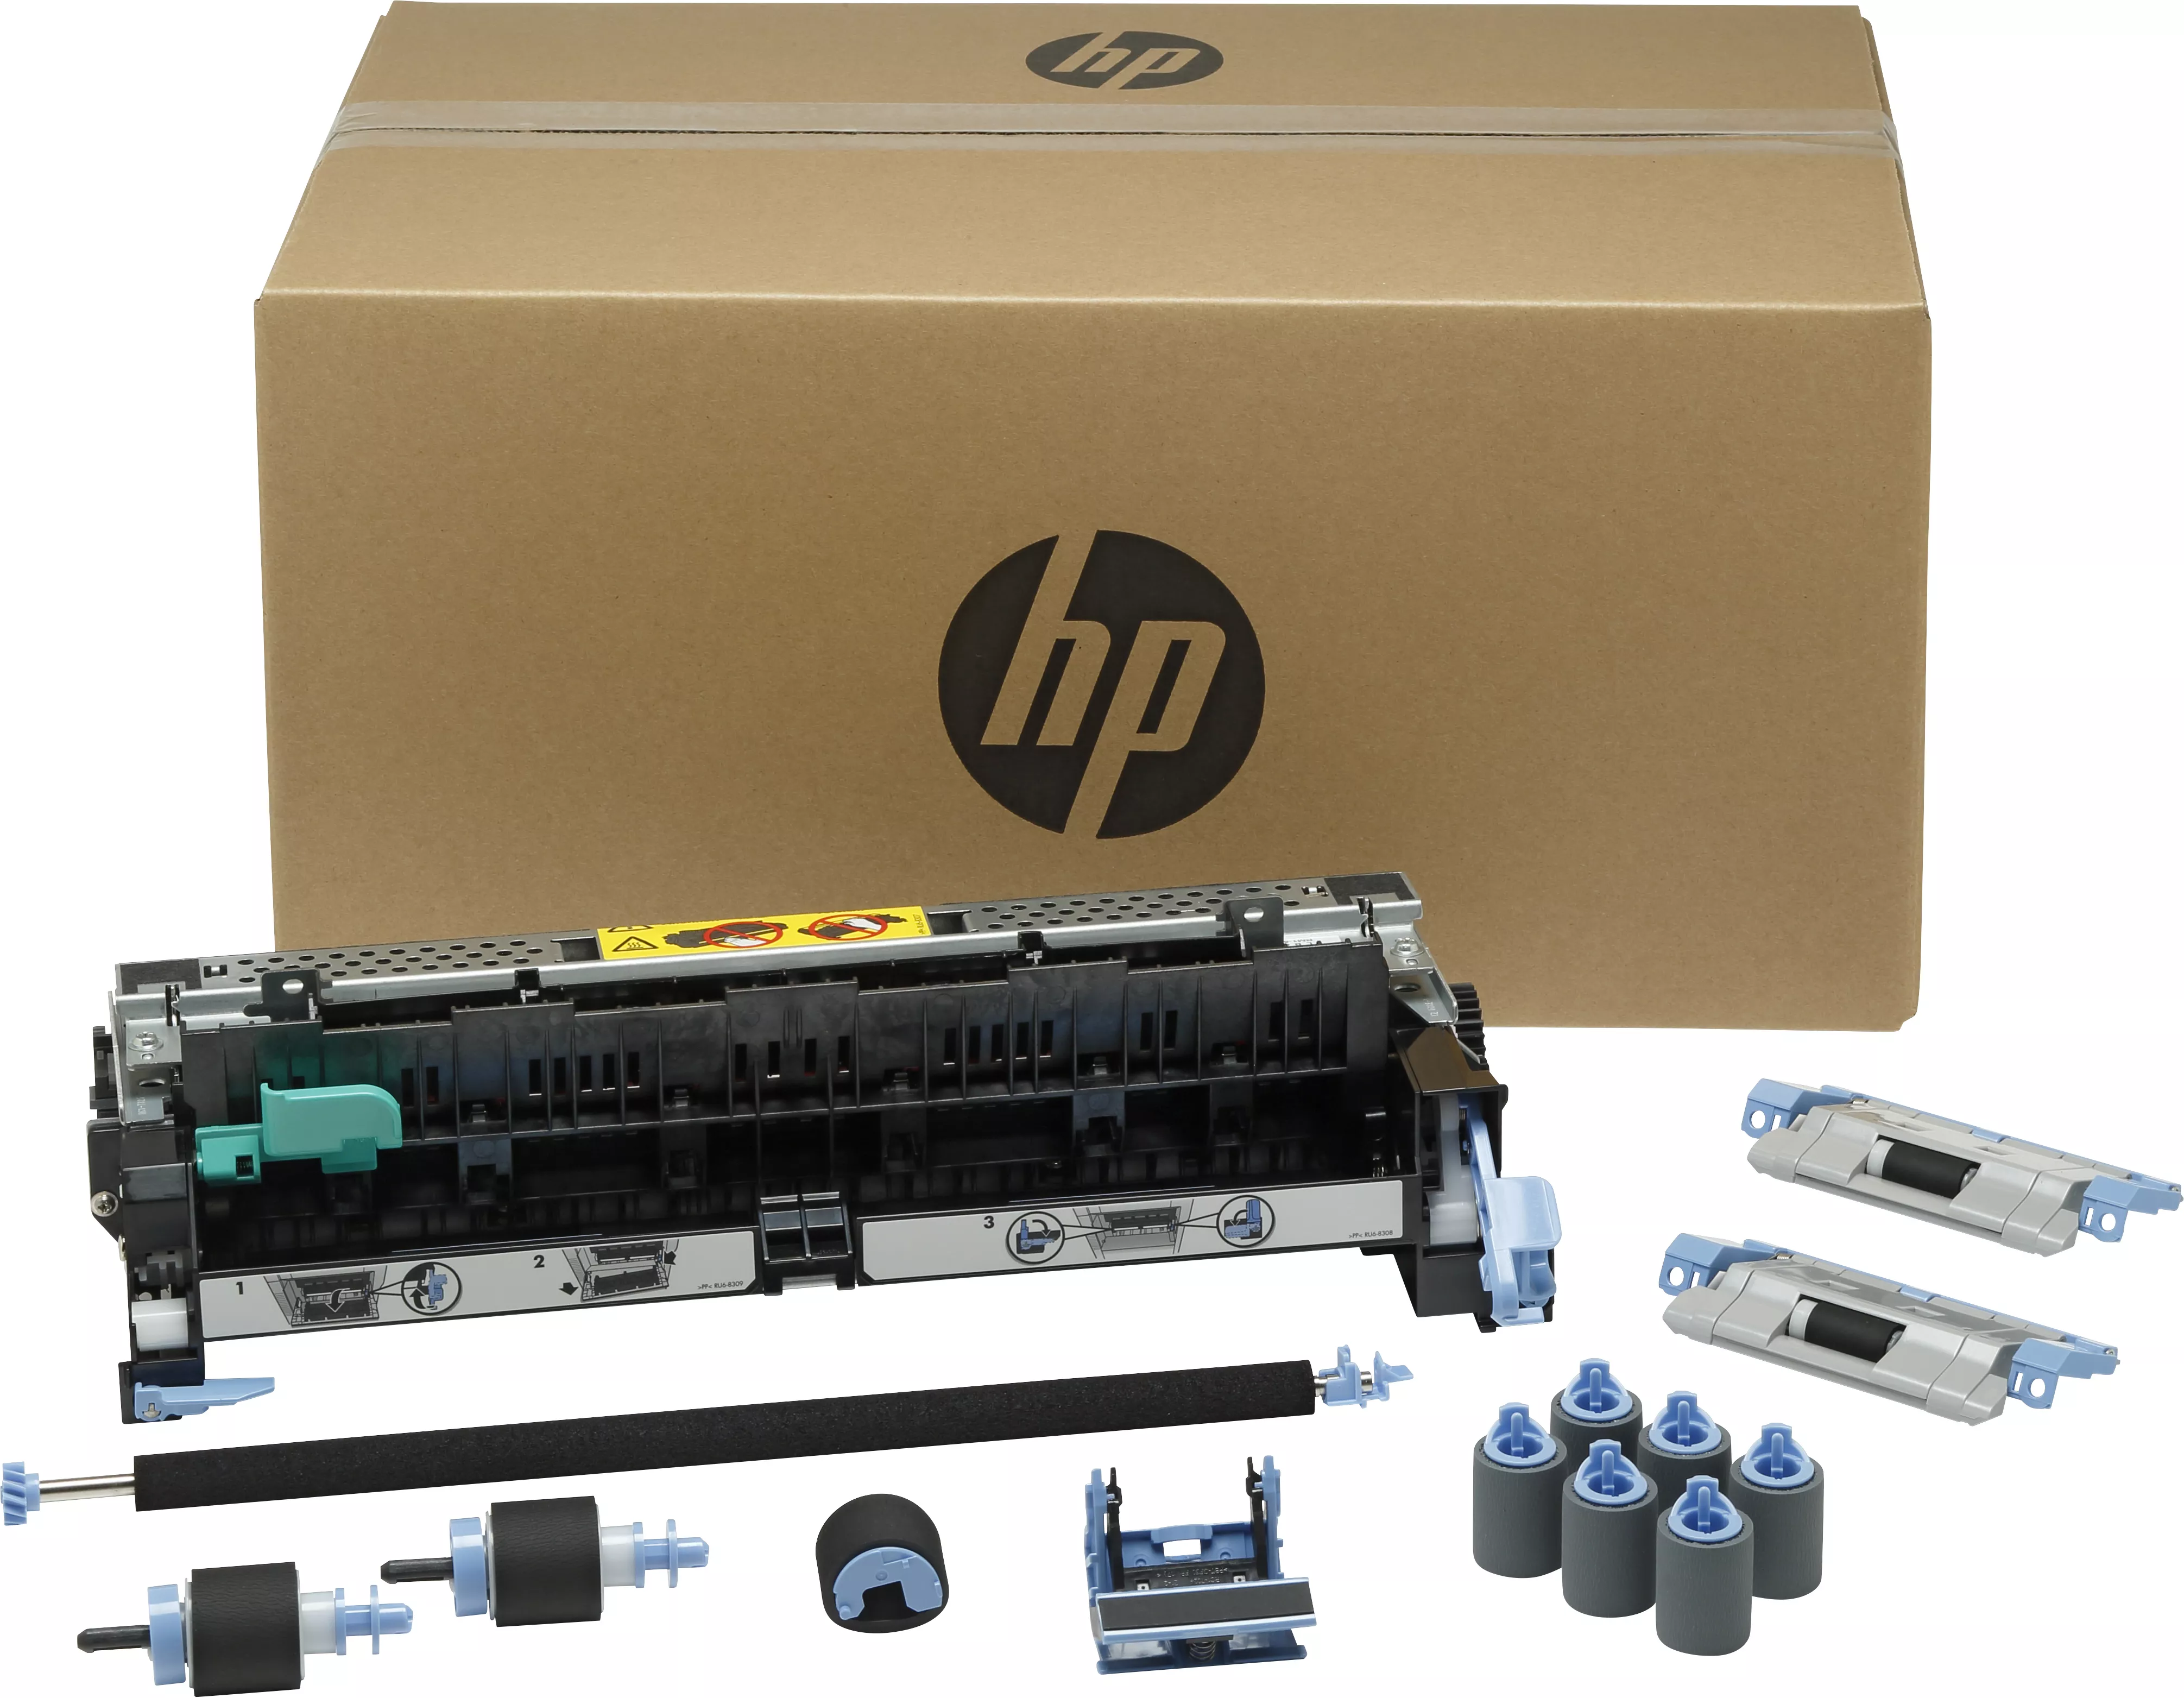 Achat HP original M712/M725 maintenance kit CF254A 220V au meilleur prix